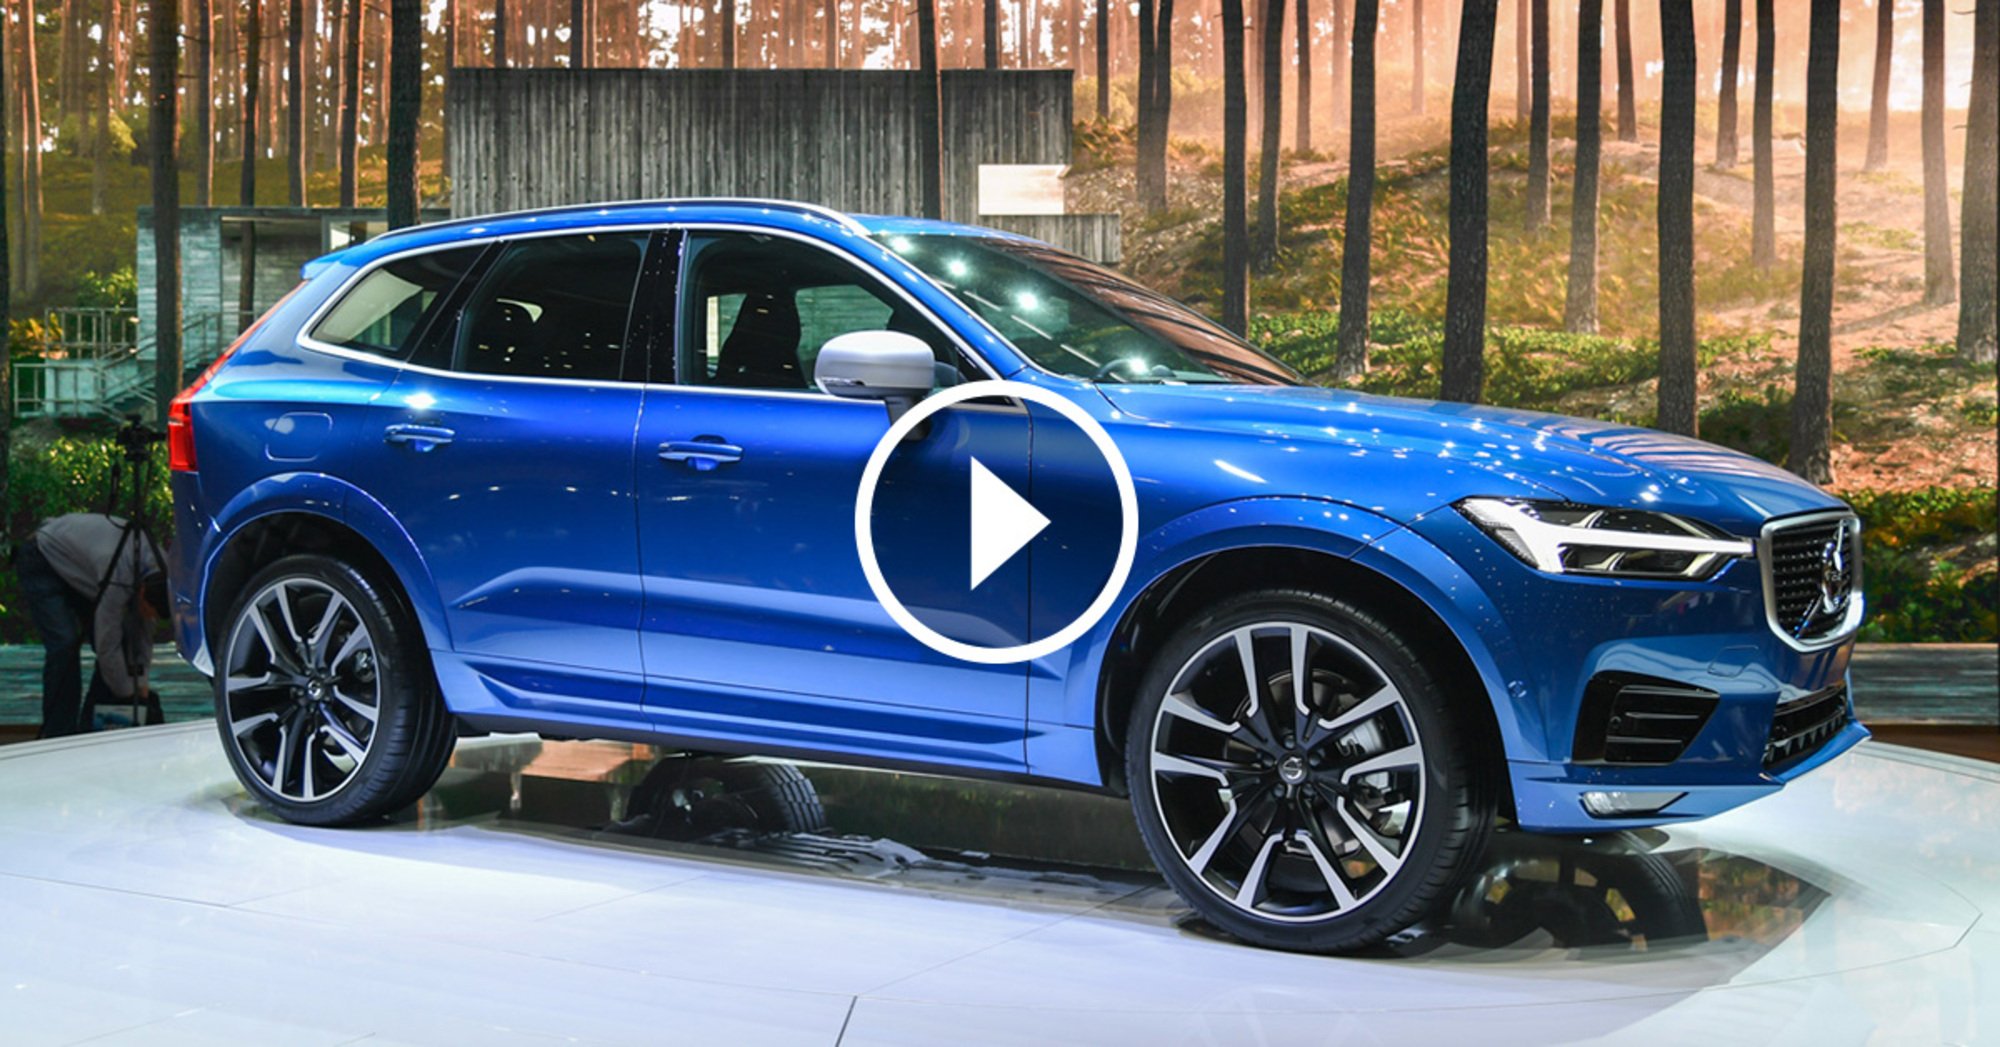 Nuova Volvo XC60, la videorecensione al Salone di Ginevra 2017 [Video]